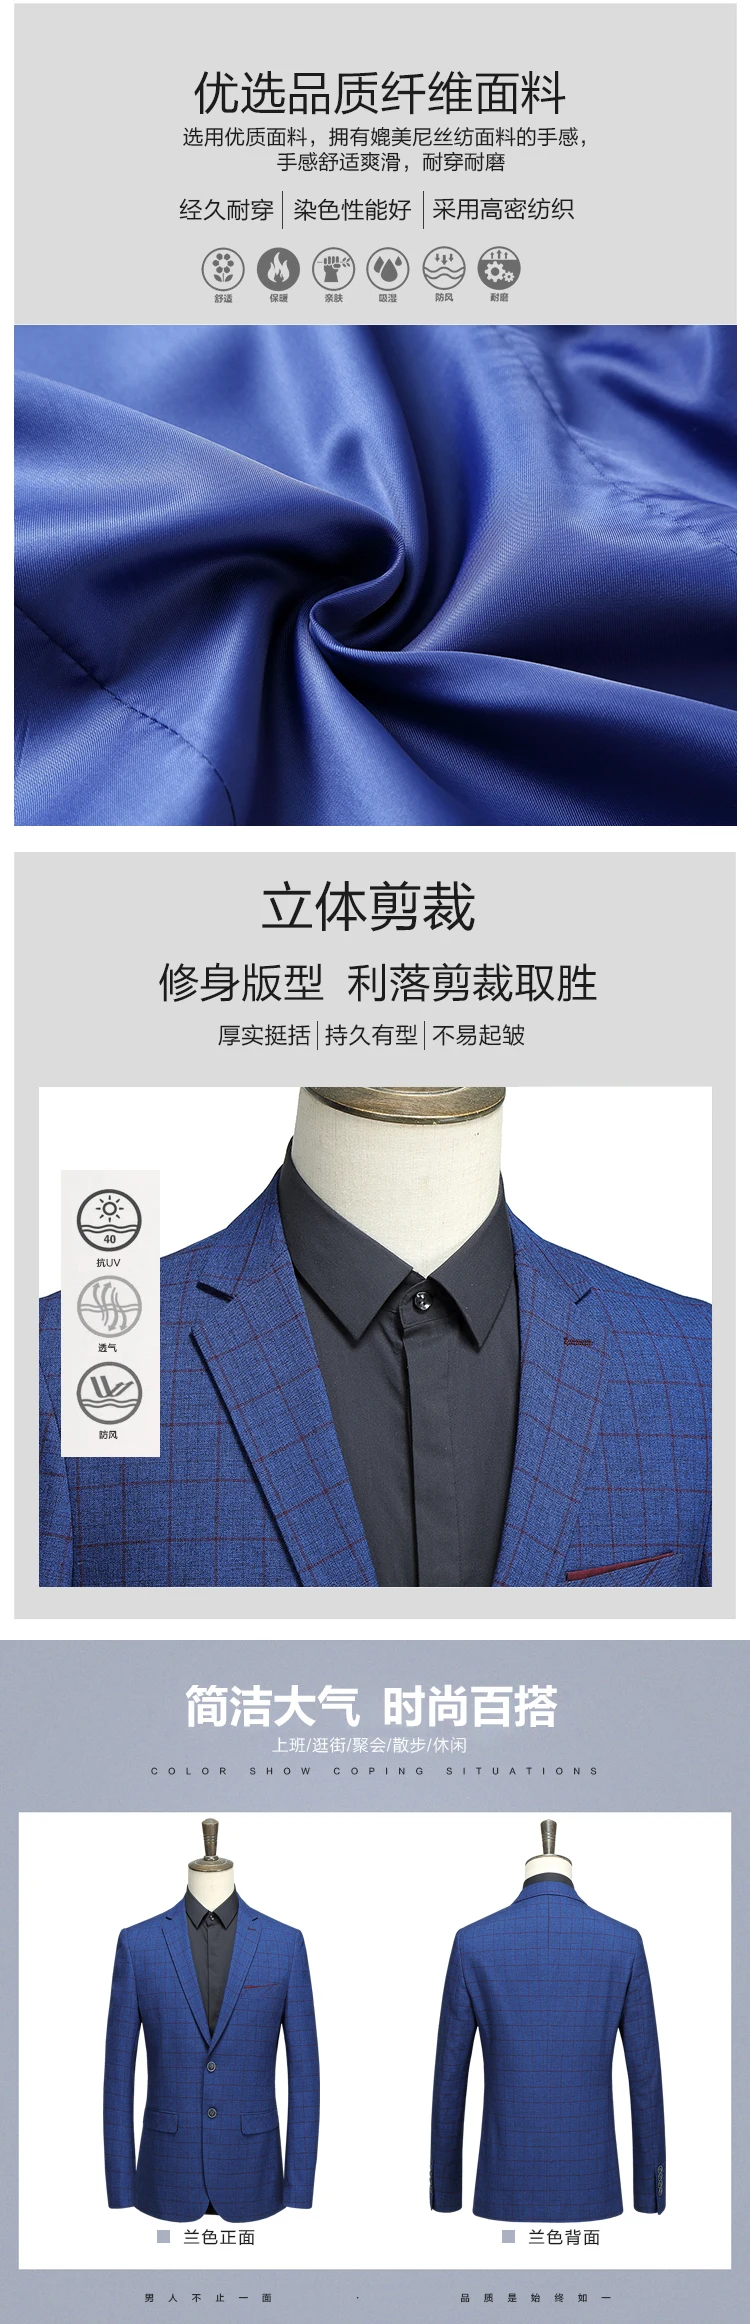 2018 Высокое качество Новый стиль мужчины бутик досуг пиджак однобортный деловая Повседневная сетки тонкий пиджак пальто Размер M-3XL